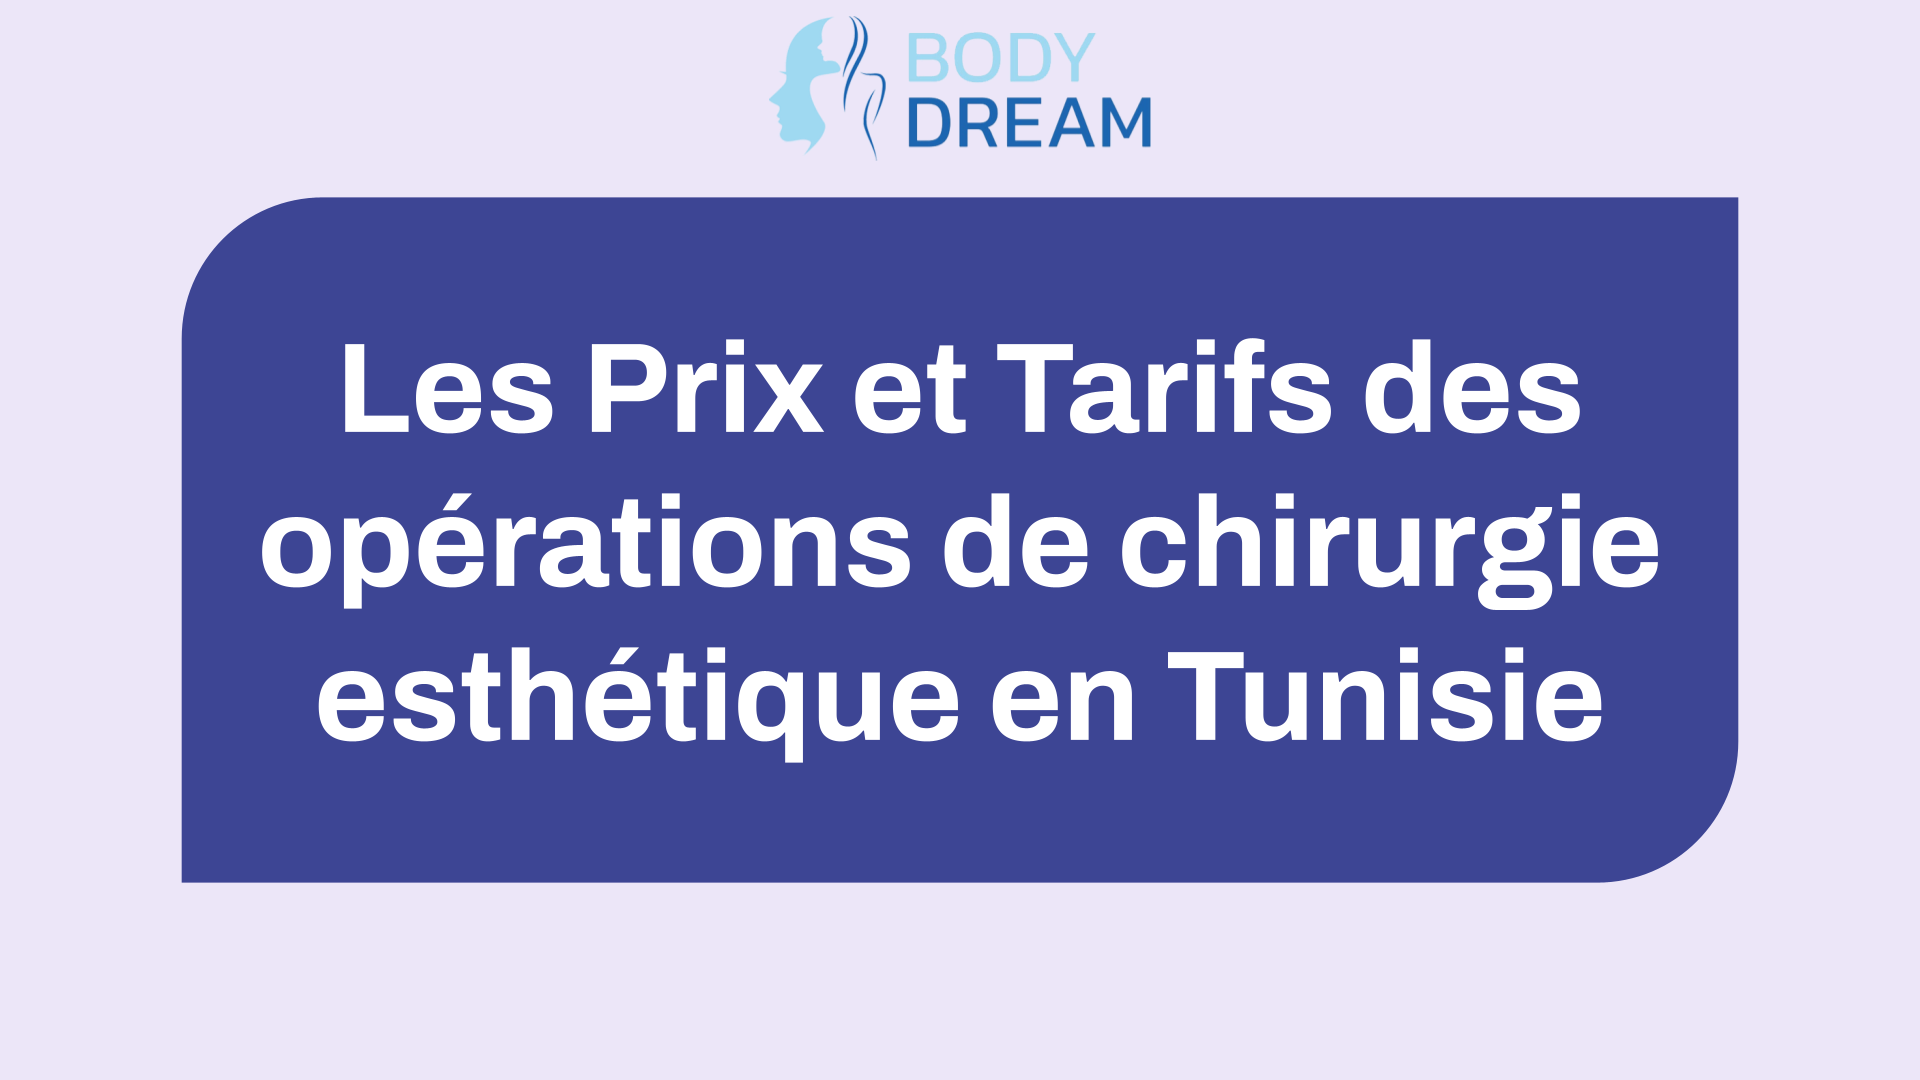 Les Prix et Tarifs des opérations de chirurgie esthétique en Tunisie